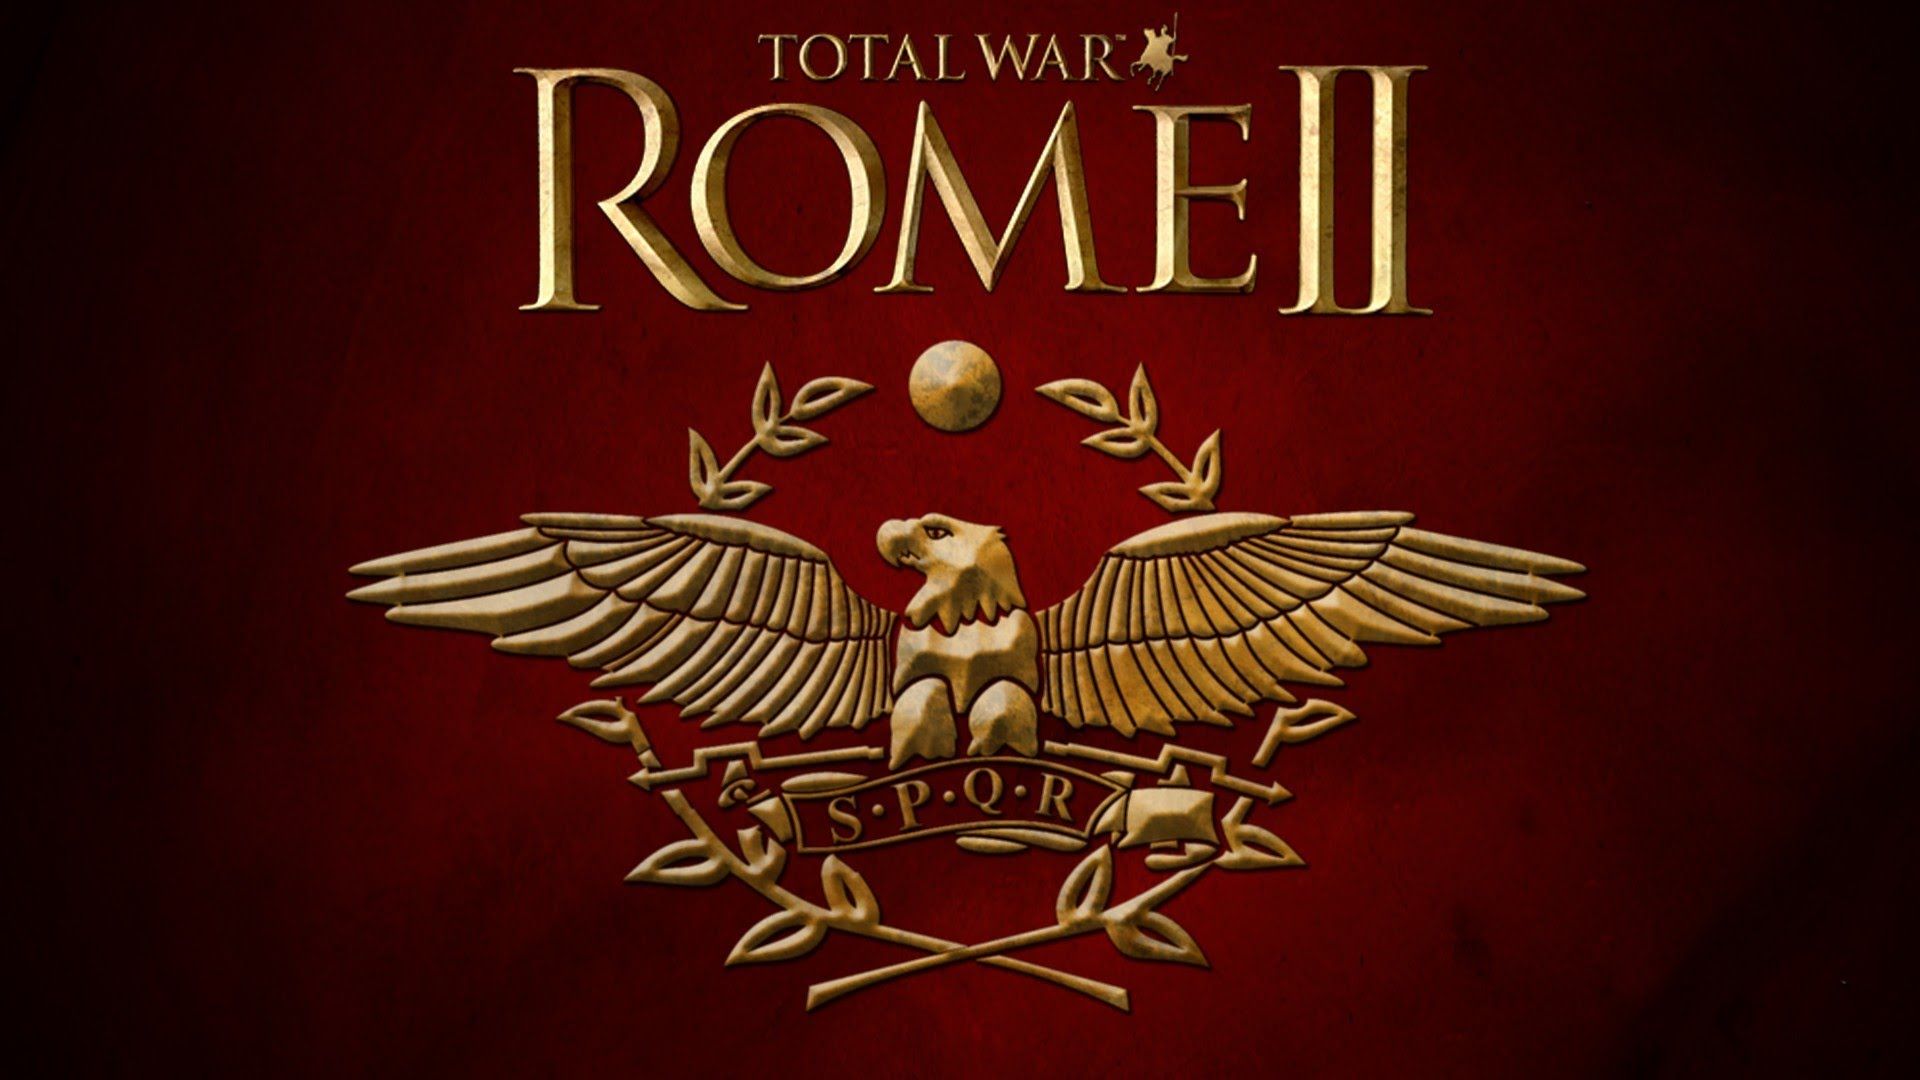 Rome 2 Total War SPQR - YouTube